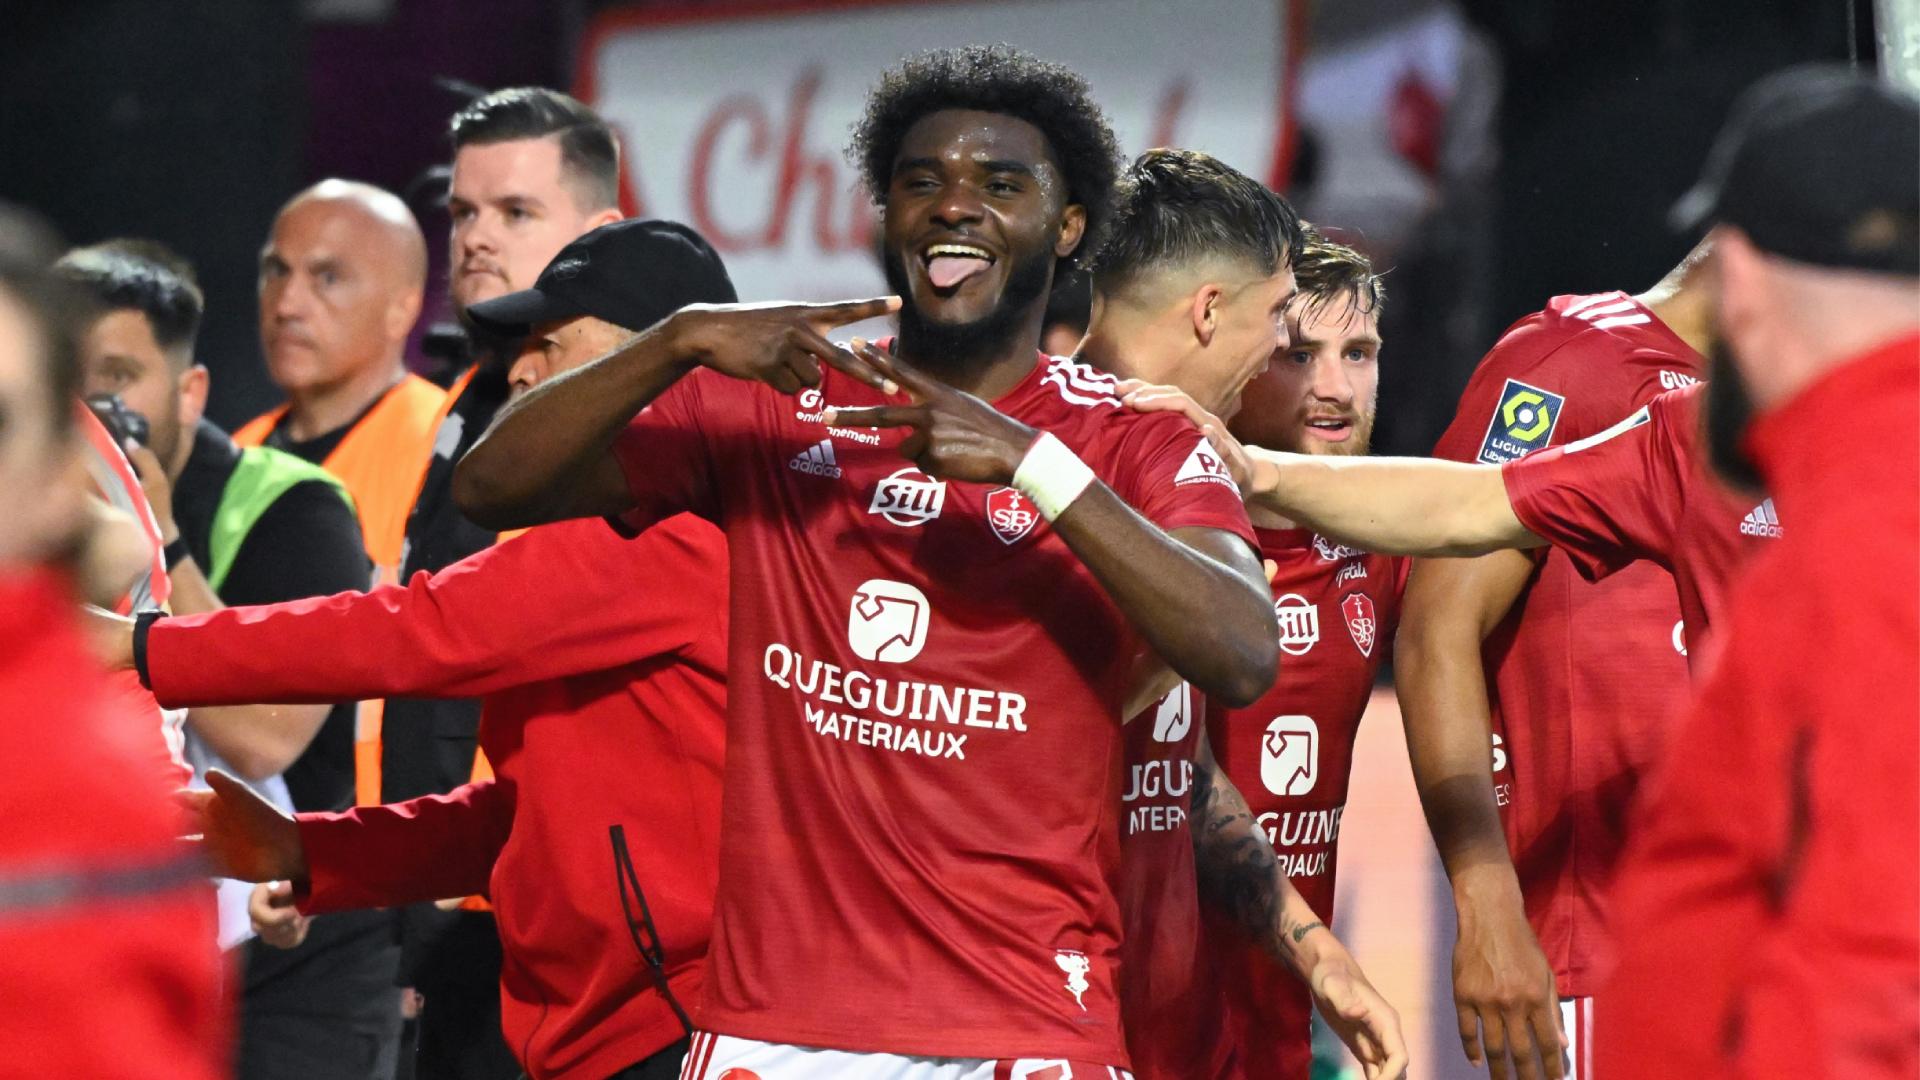 VIDEO | Ligue 1 Highlights: Stade Brest vs Stade Reims